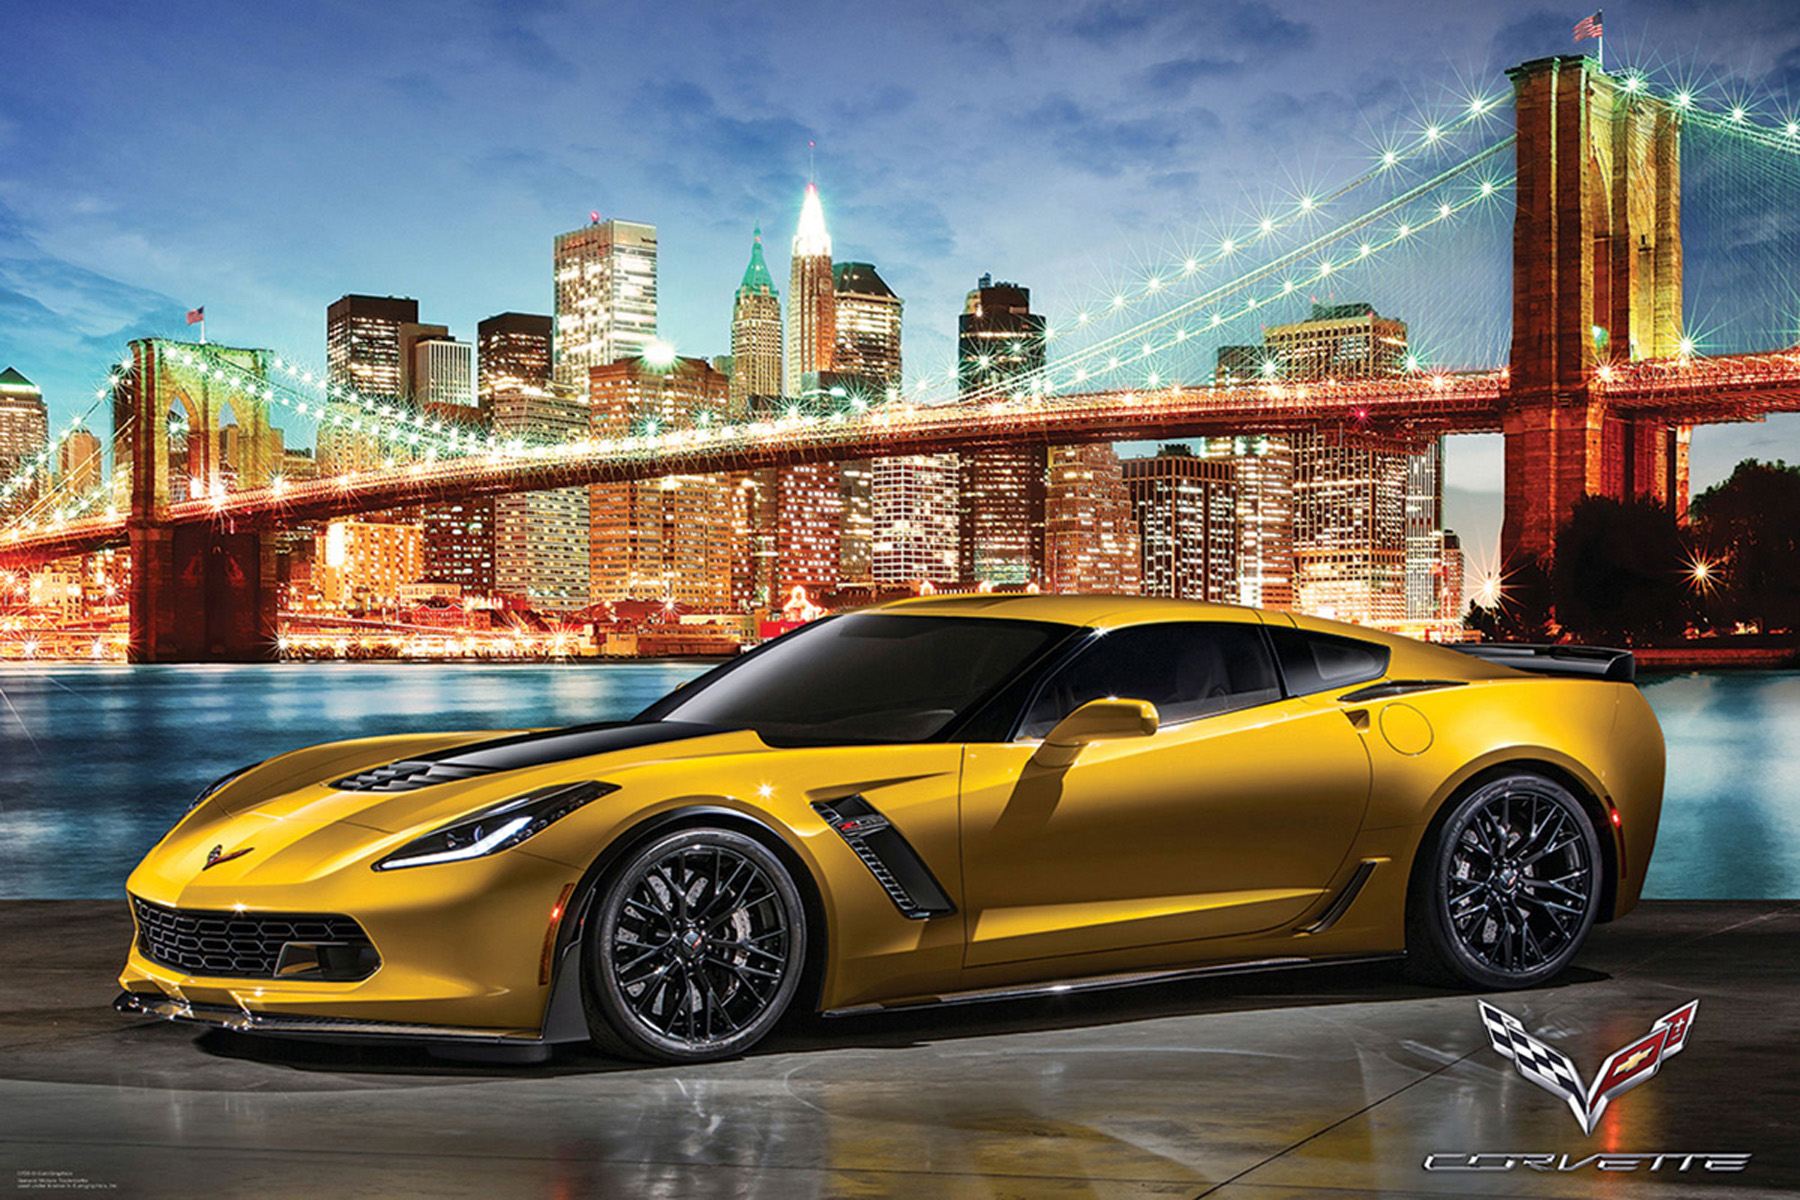 Corvette - New York in Z06